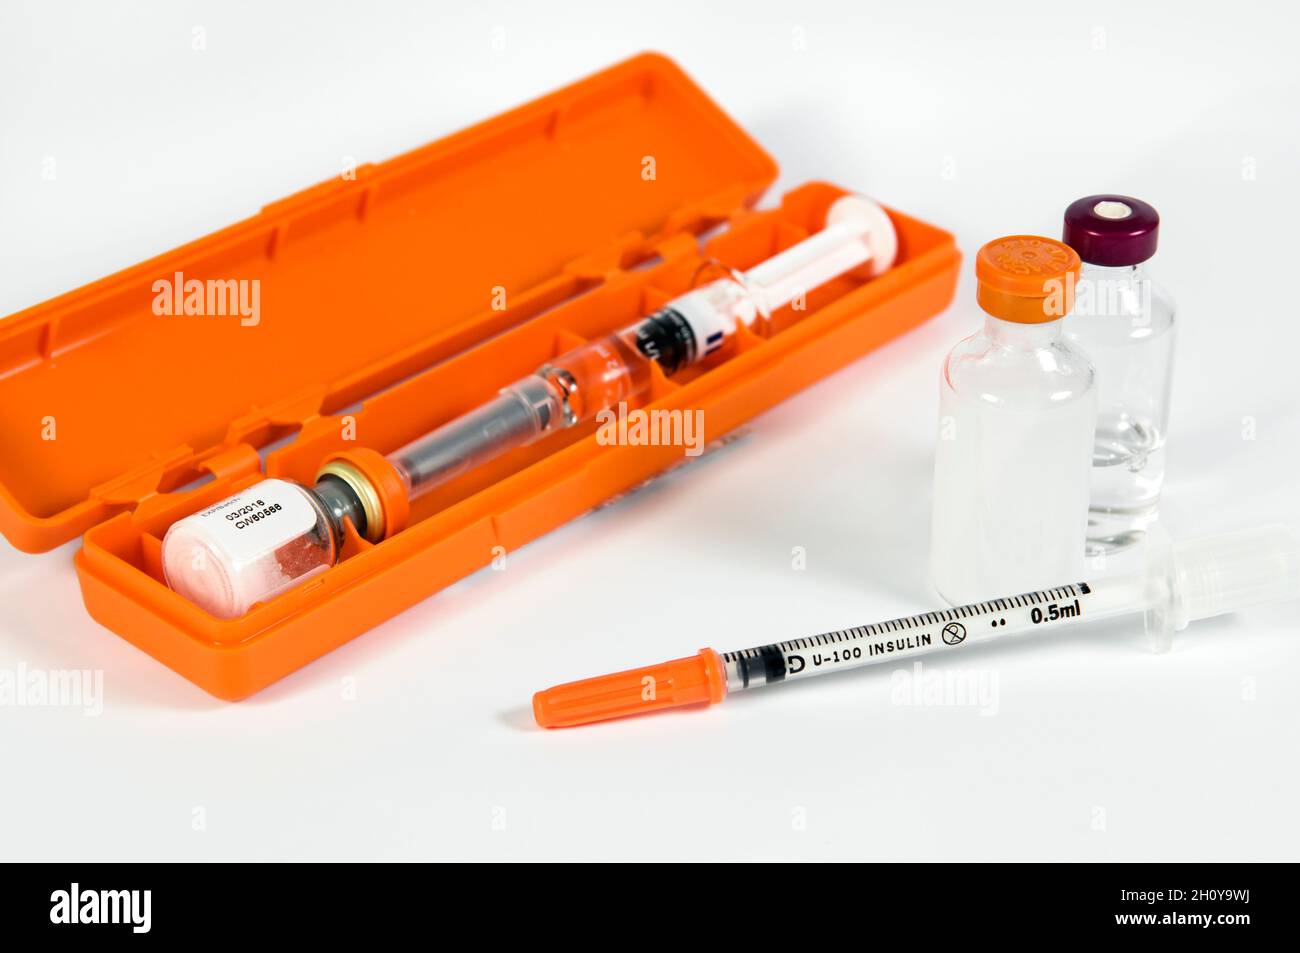 Injektionskit für diabetisches Insulin. Injektionskit für Glucagon-Hydrochlorid, mit kurz- und lang wirkenden Insulinfläschchen und Injektionsnadel mit Sicherheitsverschluss Stockfoto